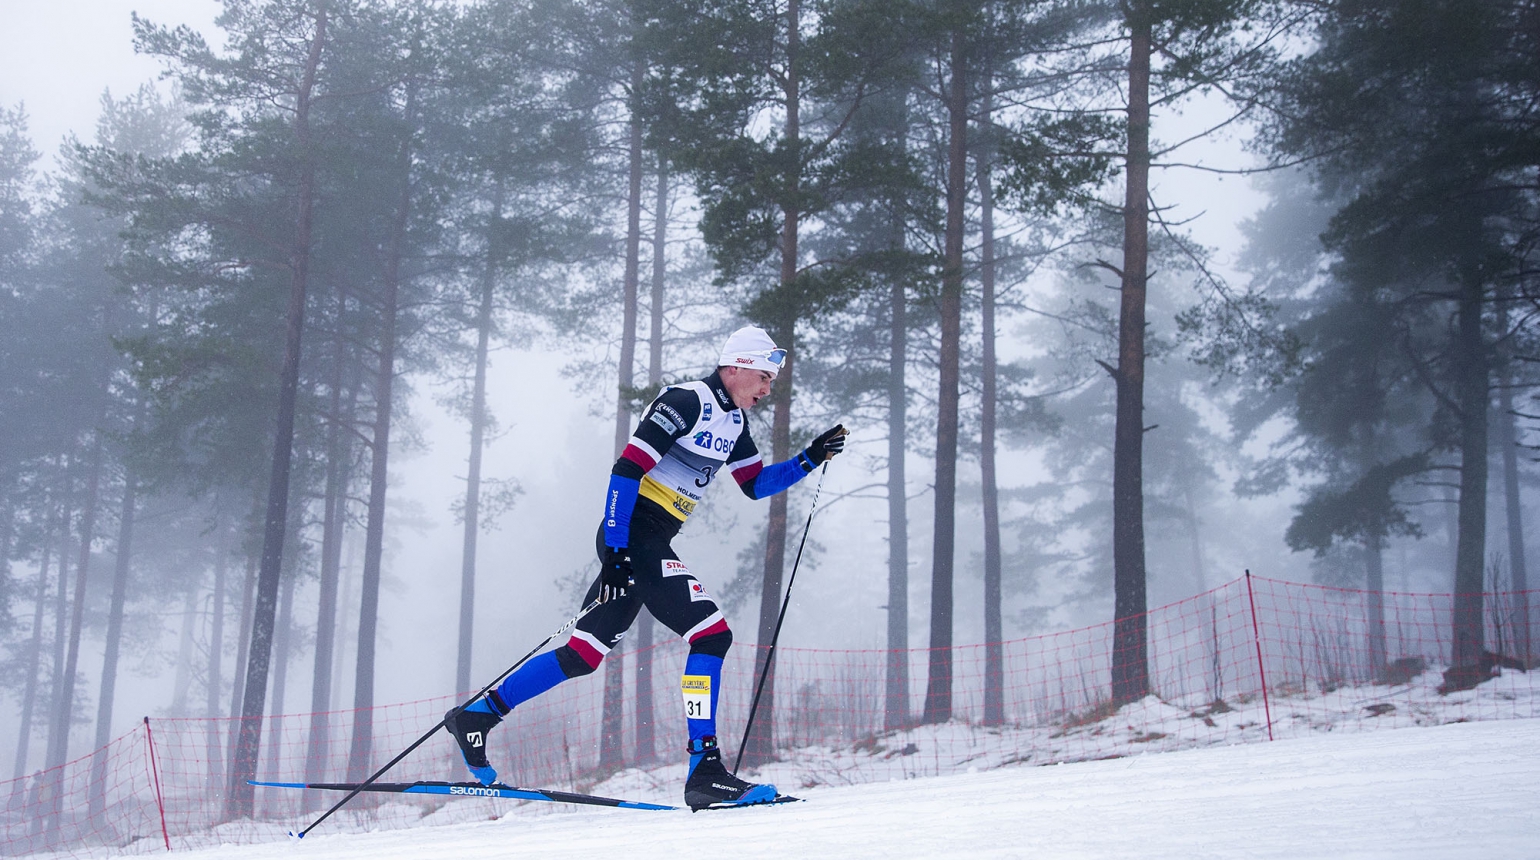 Tour de Ski: Michal Novák se ve stíhačce posunul na 32. místo. Dopředu šel také Adam Fellner